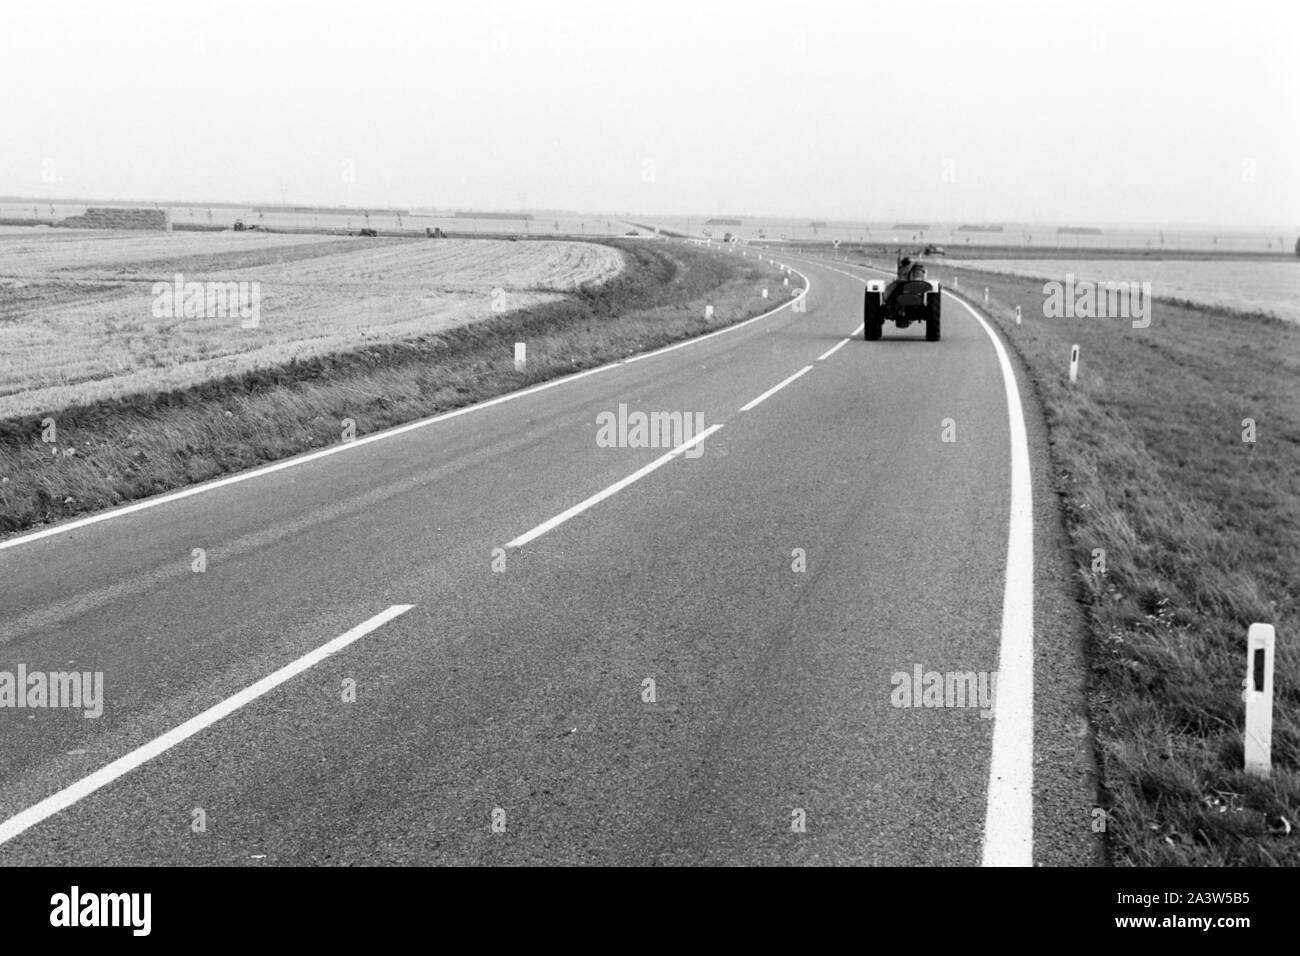 Traktor auf der Straße nach der Provinz Harderwijk en Gueldre, Pays-Bas 1971. Le tracteur sur la rue à Harderwijk dans la province de Gelderland, Pays-Bas 1971. Banque D'Images